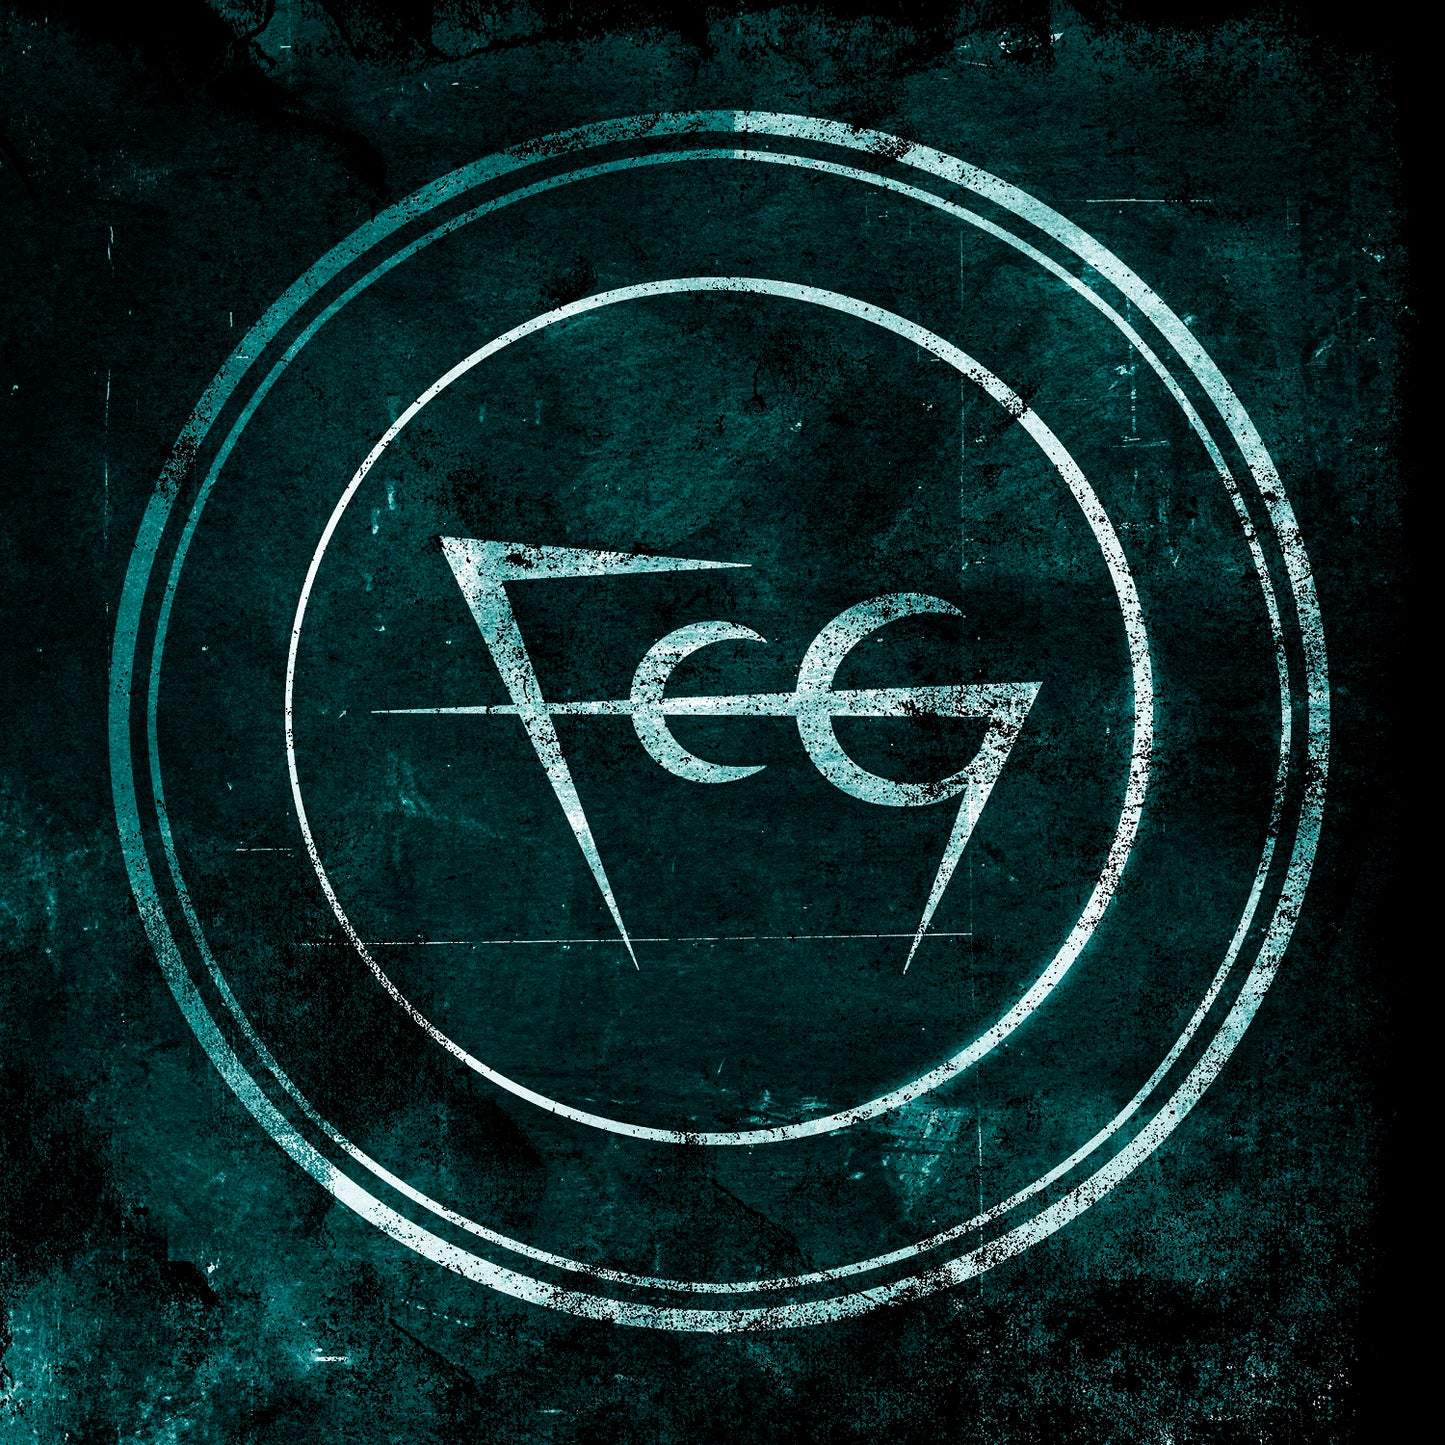 FCG (feat. The Flood Speaks) - The Flood Speaks DIGITAL ALBUM